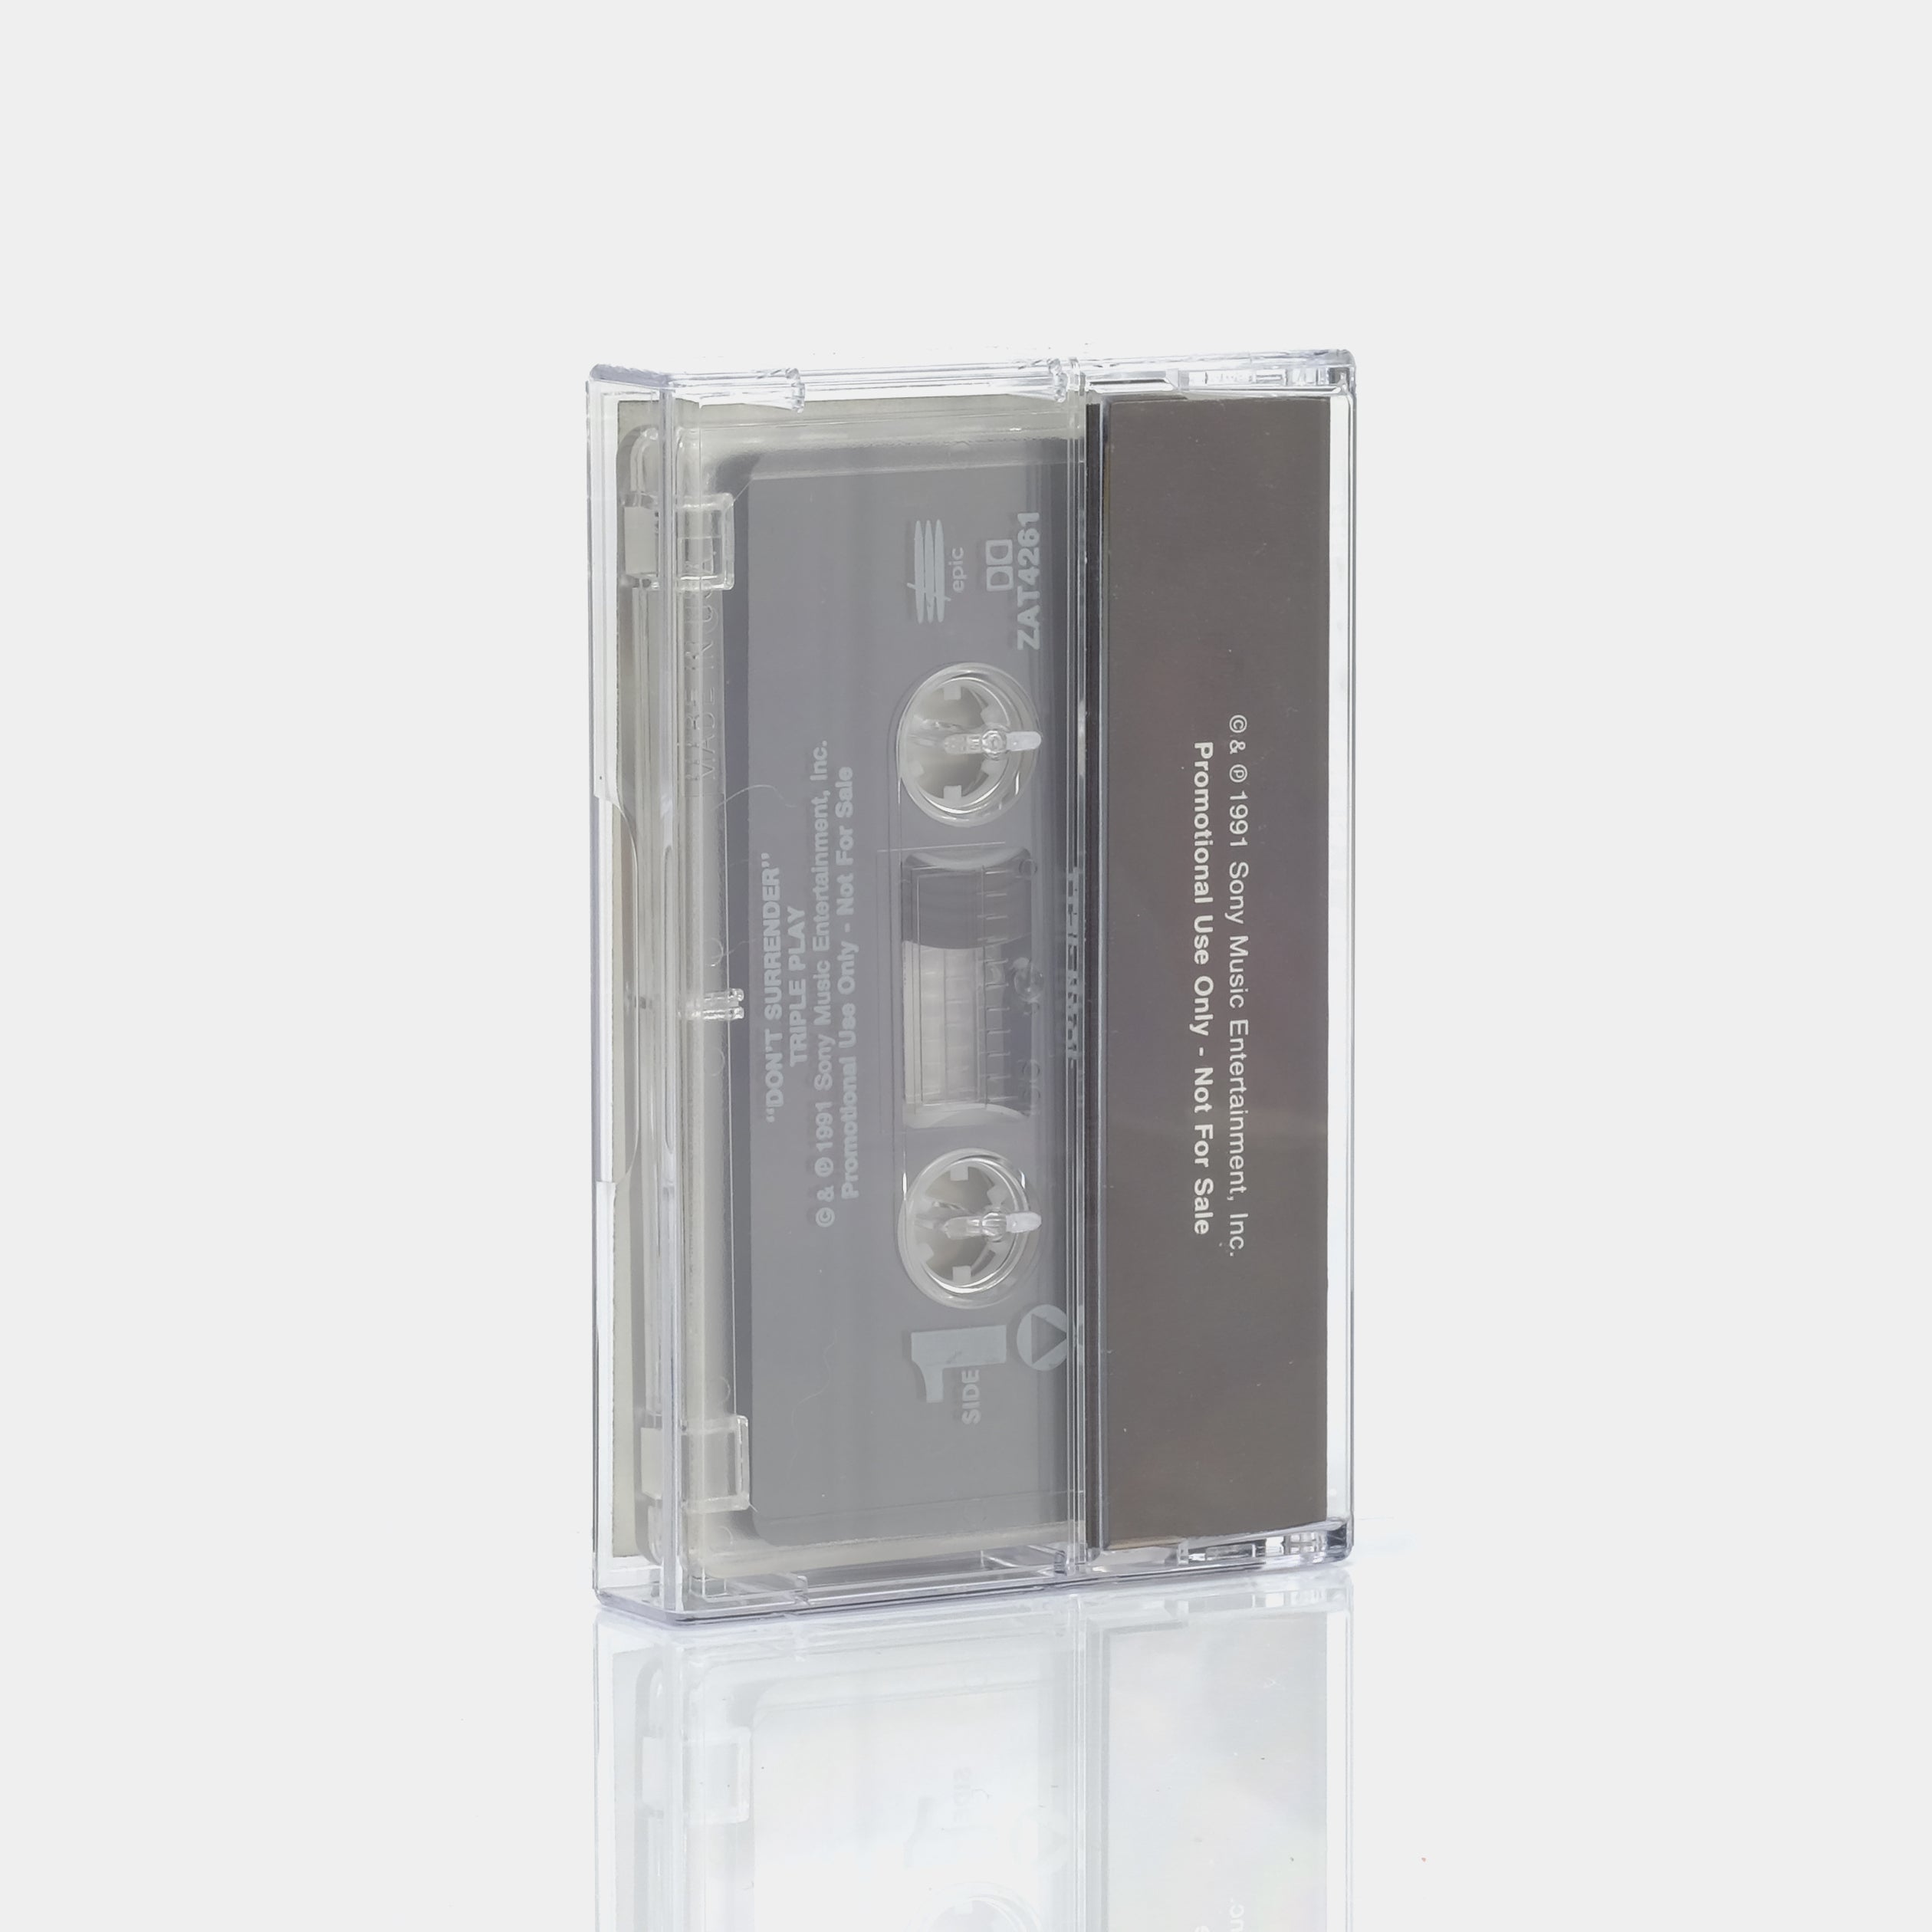 Joan Jett - Don't Surrender Cassette Tape Single